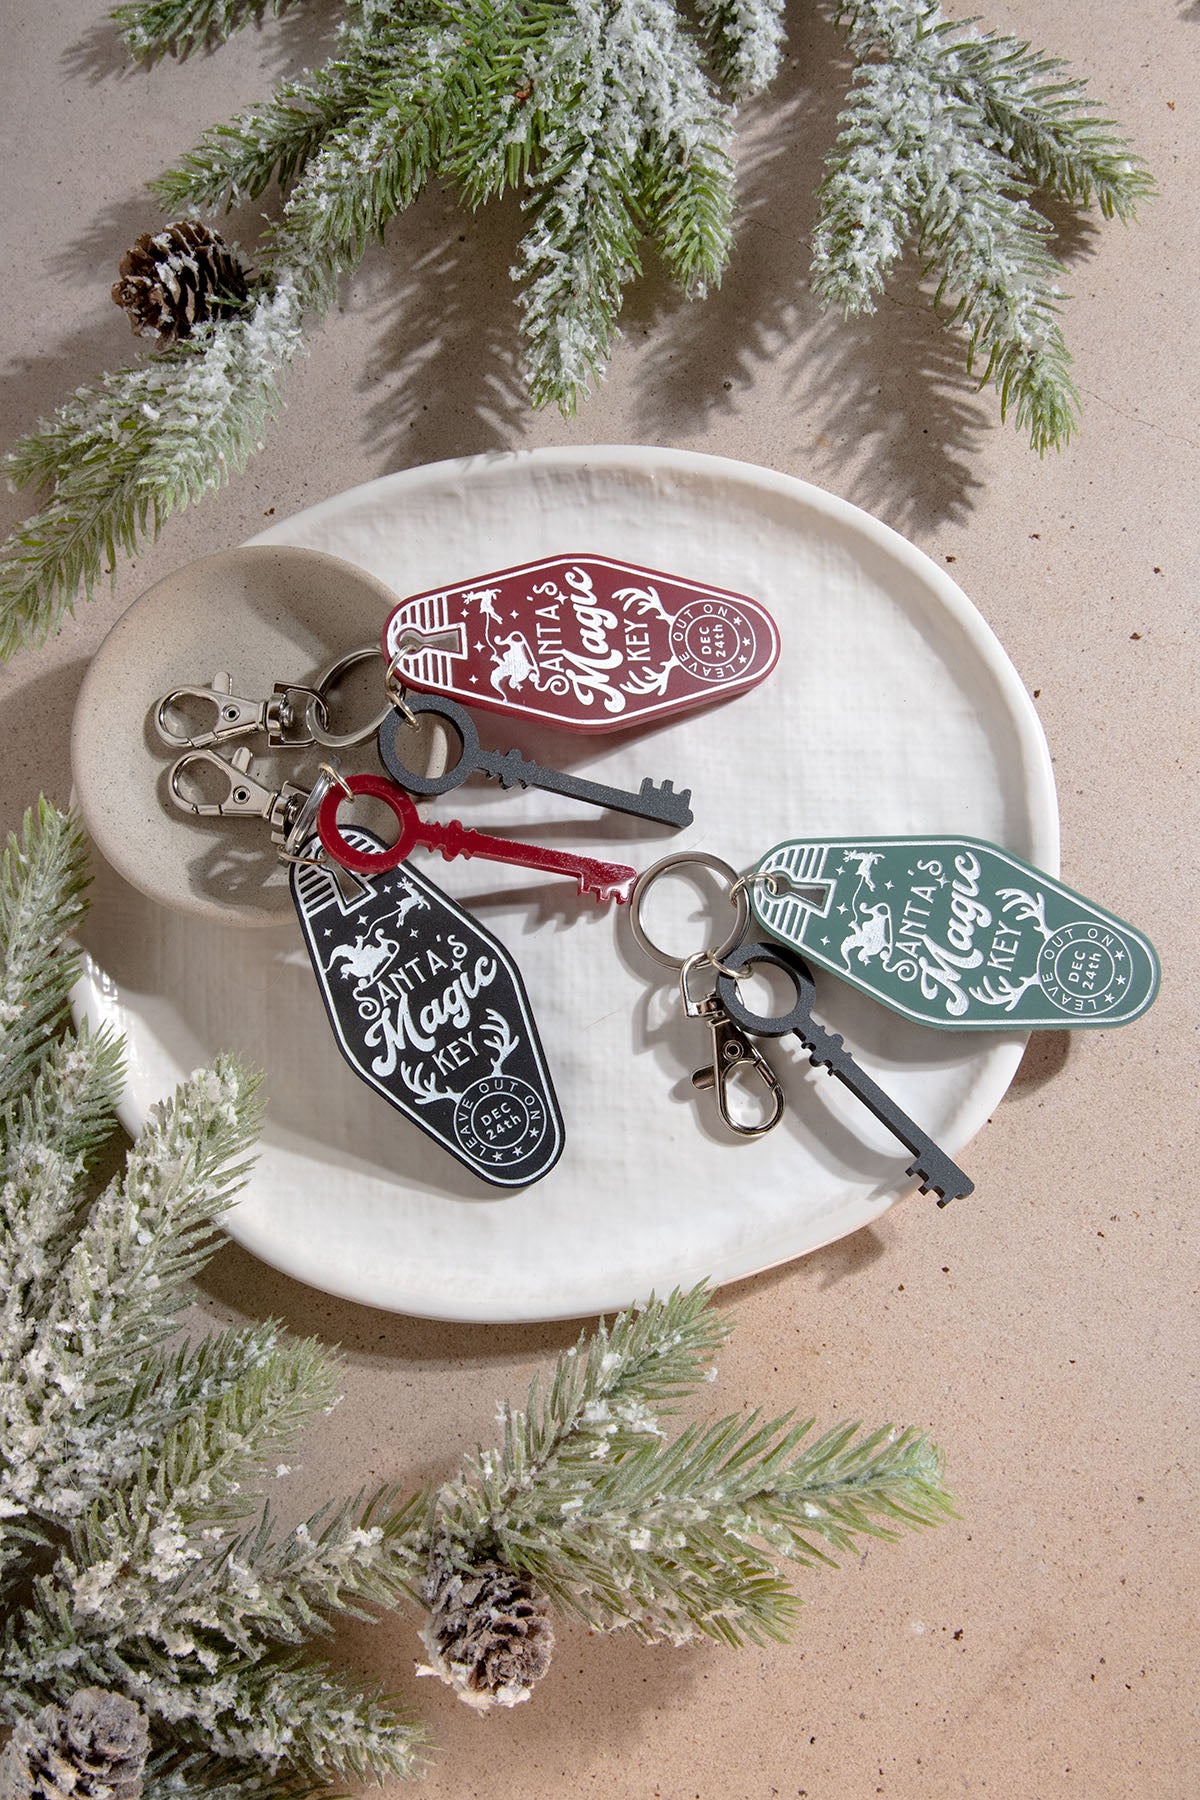 Santa's Magic Key Acrylic Retro Keychain – The Tipsy Anvil Co.